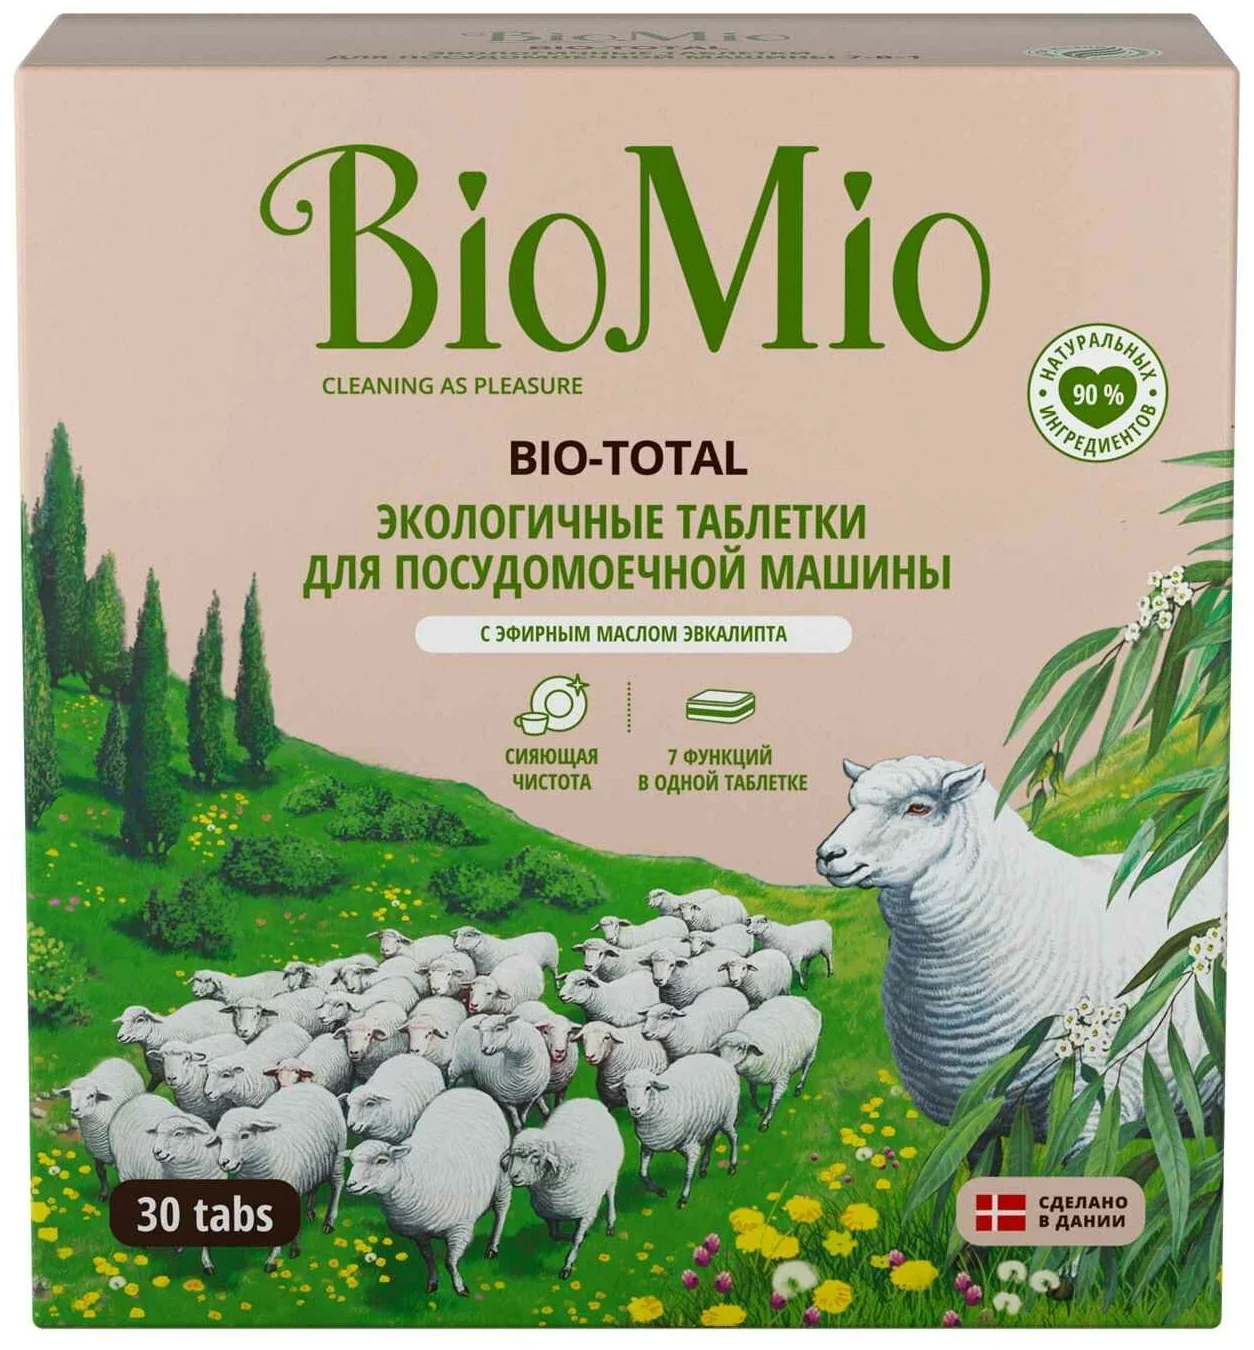 BioMio Bio-total - особенности: не тестировалось на животных, биоразлагаемое, растворимая оболочка